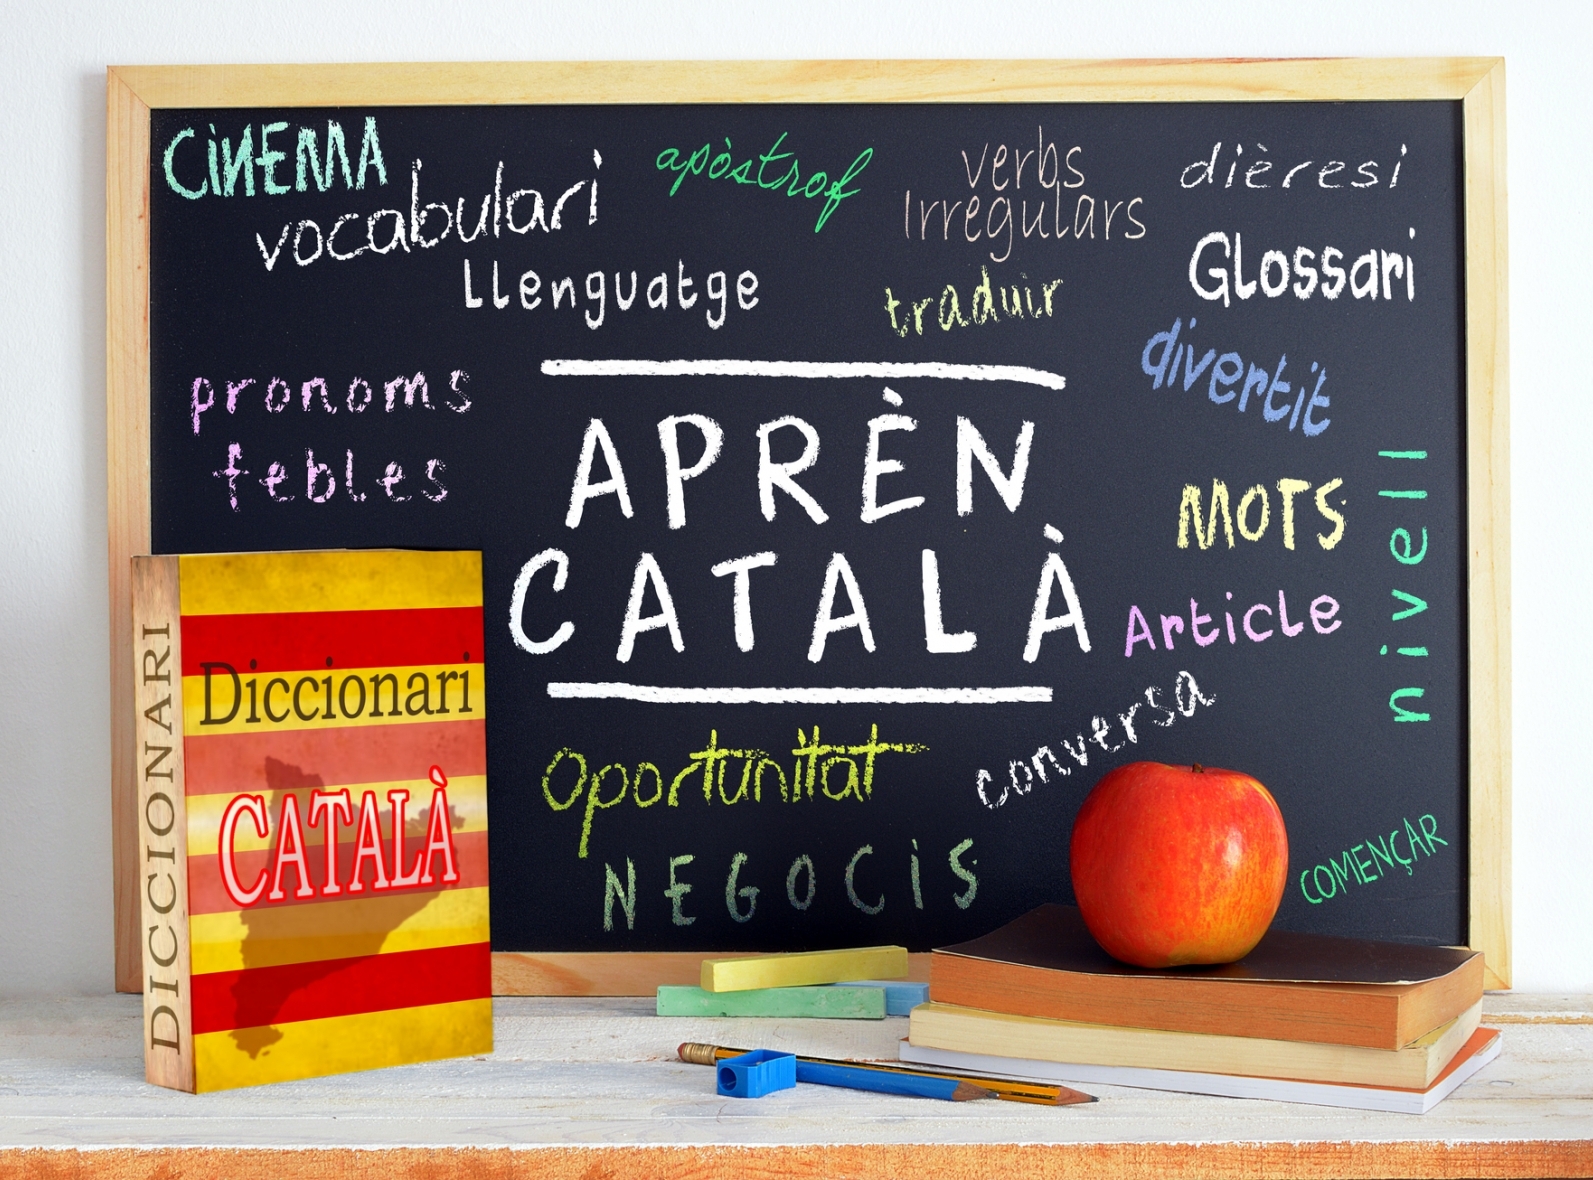 Técnicas y consejos para sembrar en catalán: ¡Aprende a cultivar en la hermosa lengua de Cataluña!